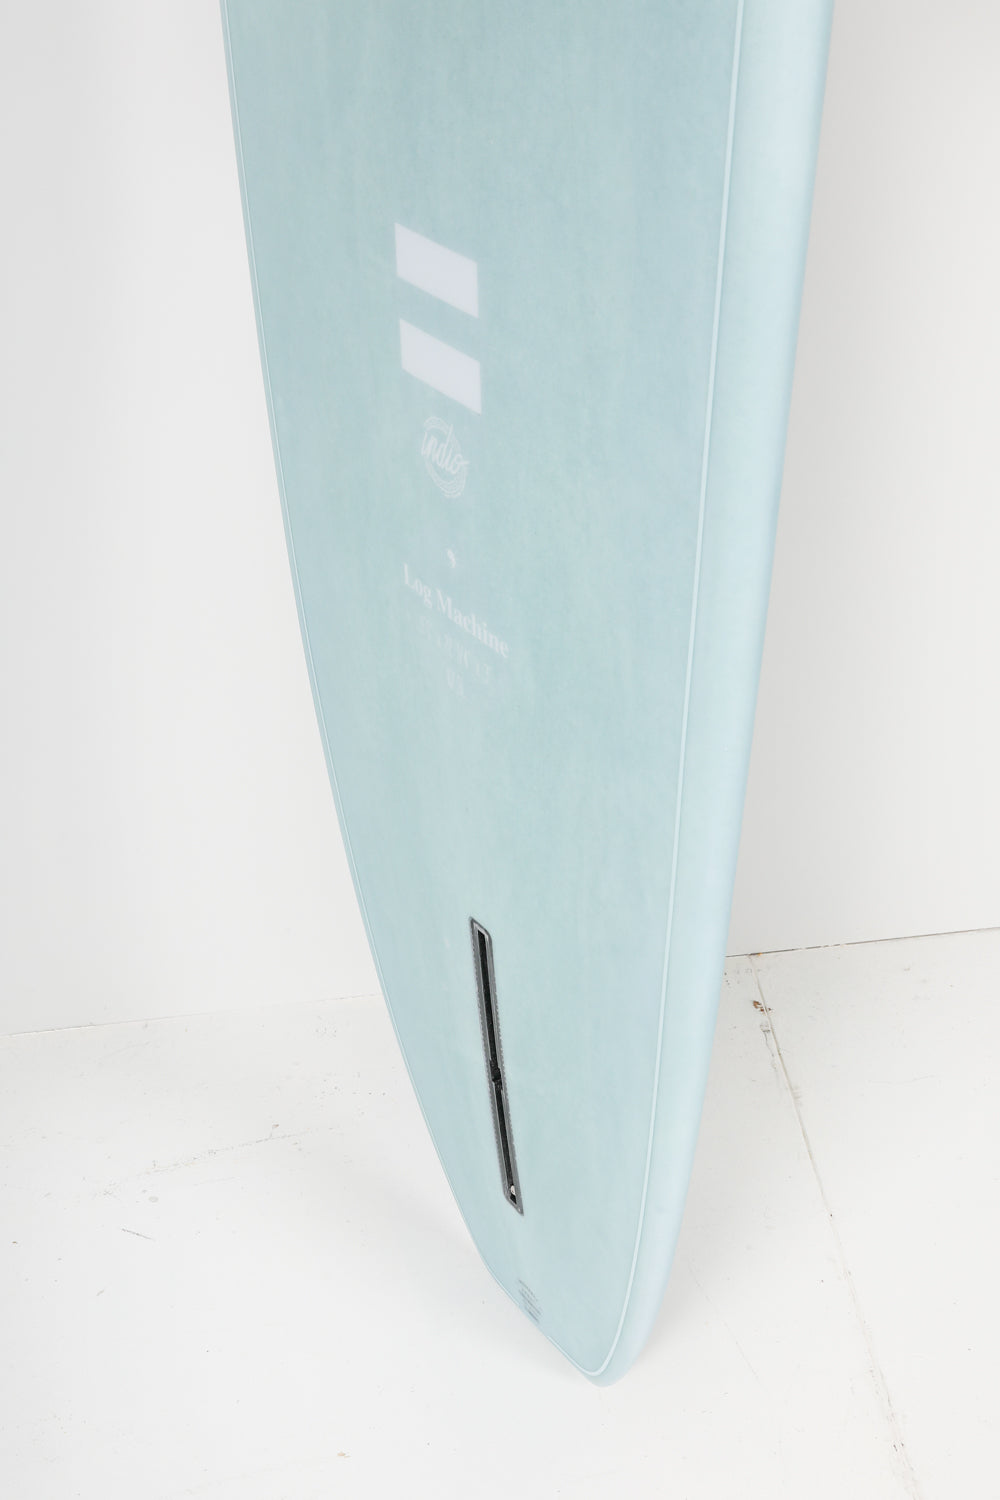 
                  
                    Pukas Surf Shop - Indio Surfboards - LOG MACHINE Aqua Cement - 9´0 x 22 1/4 x 3 - 67,90L
                  
                